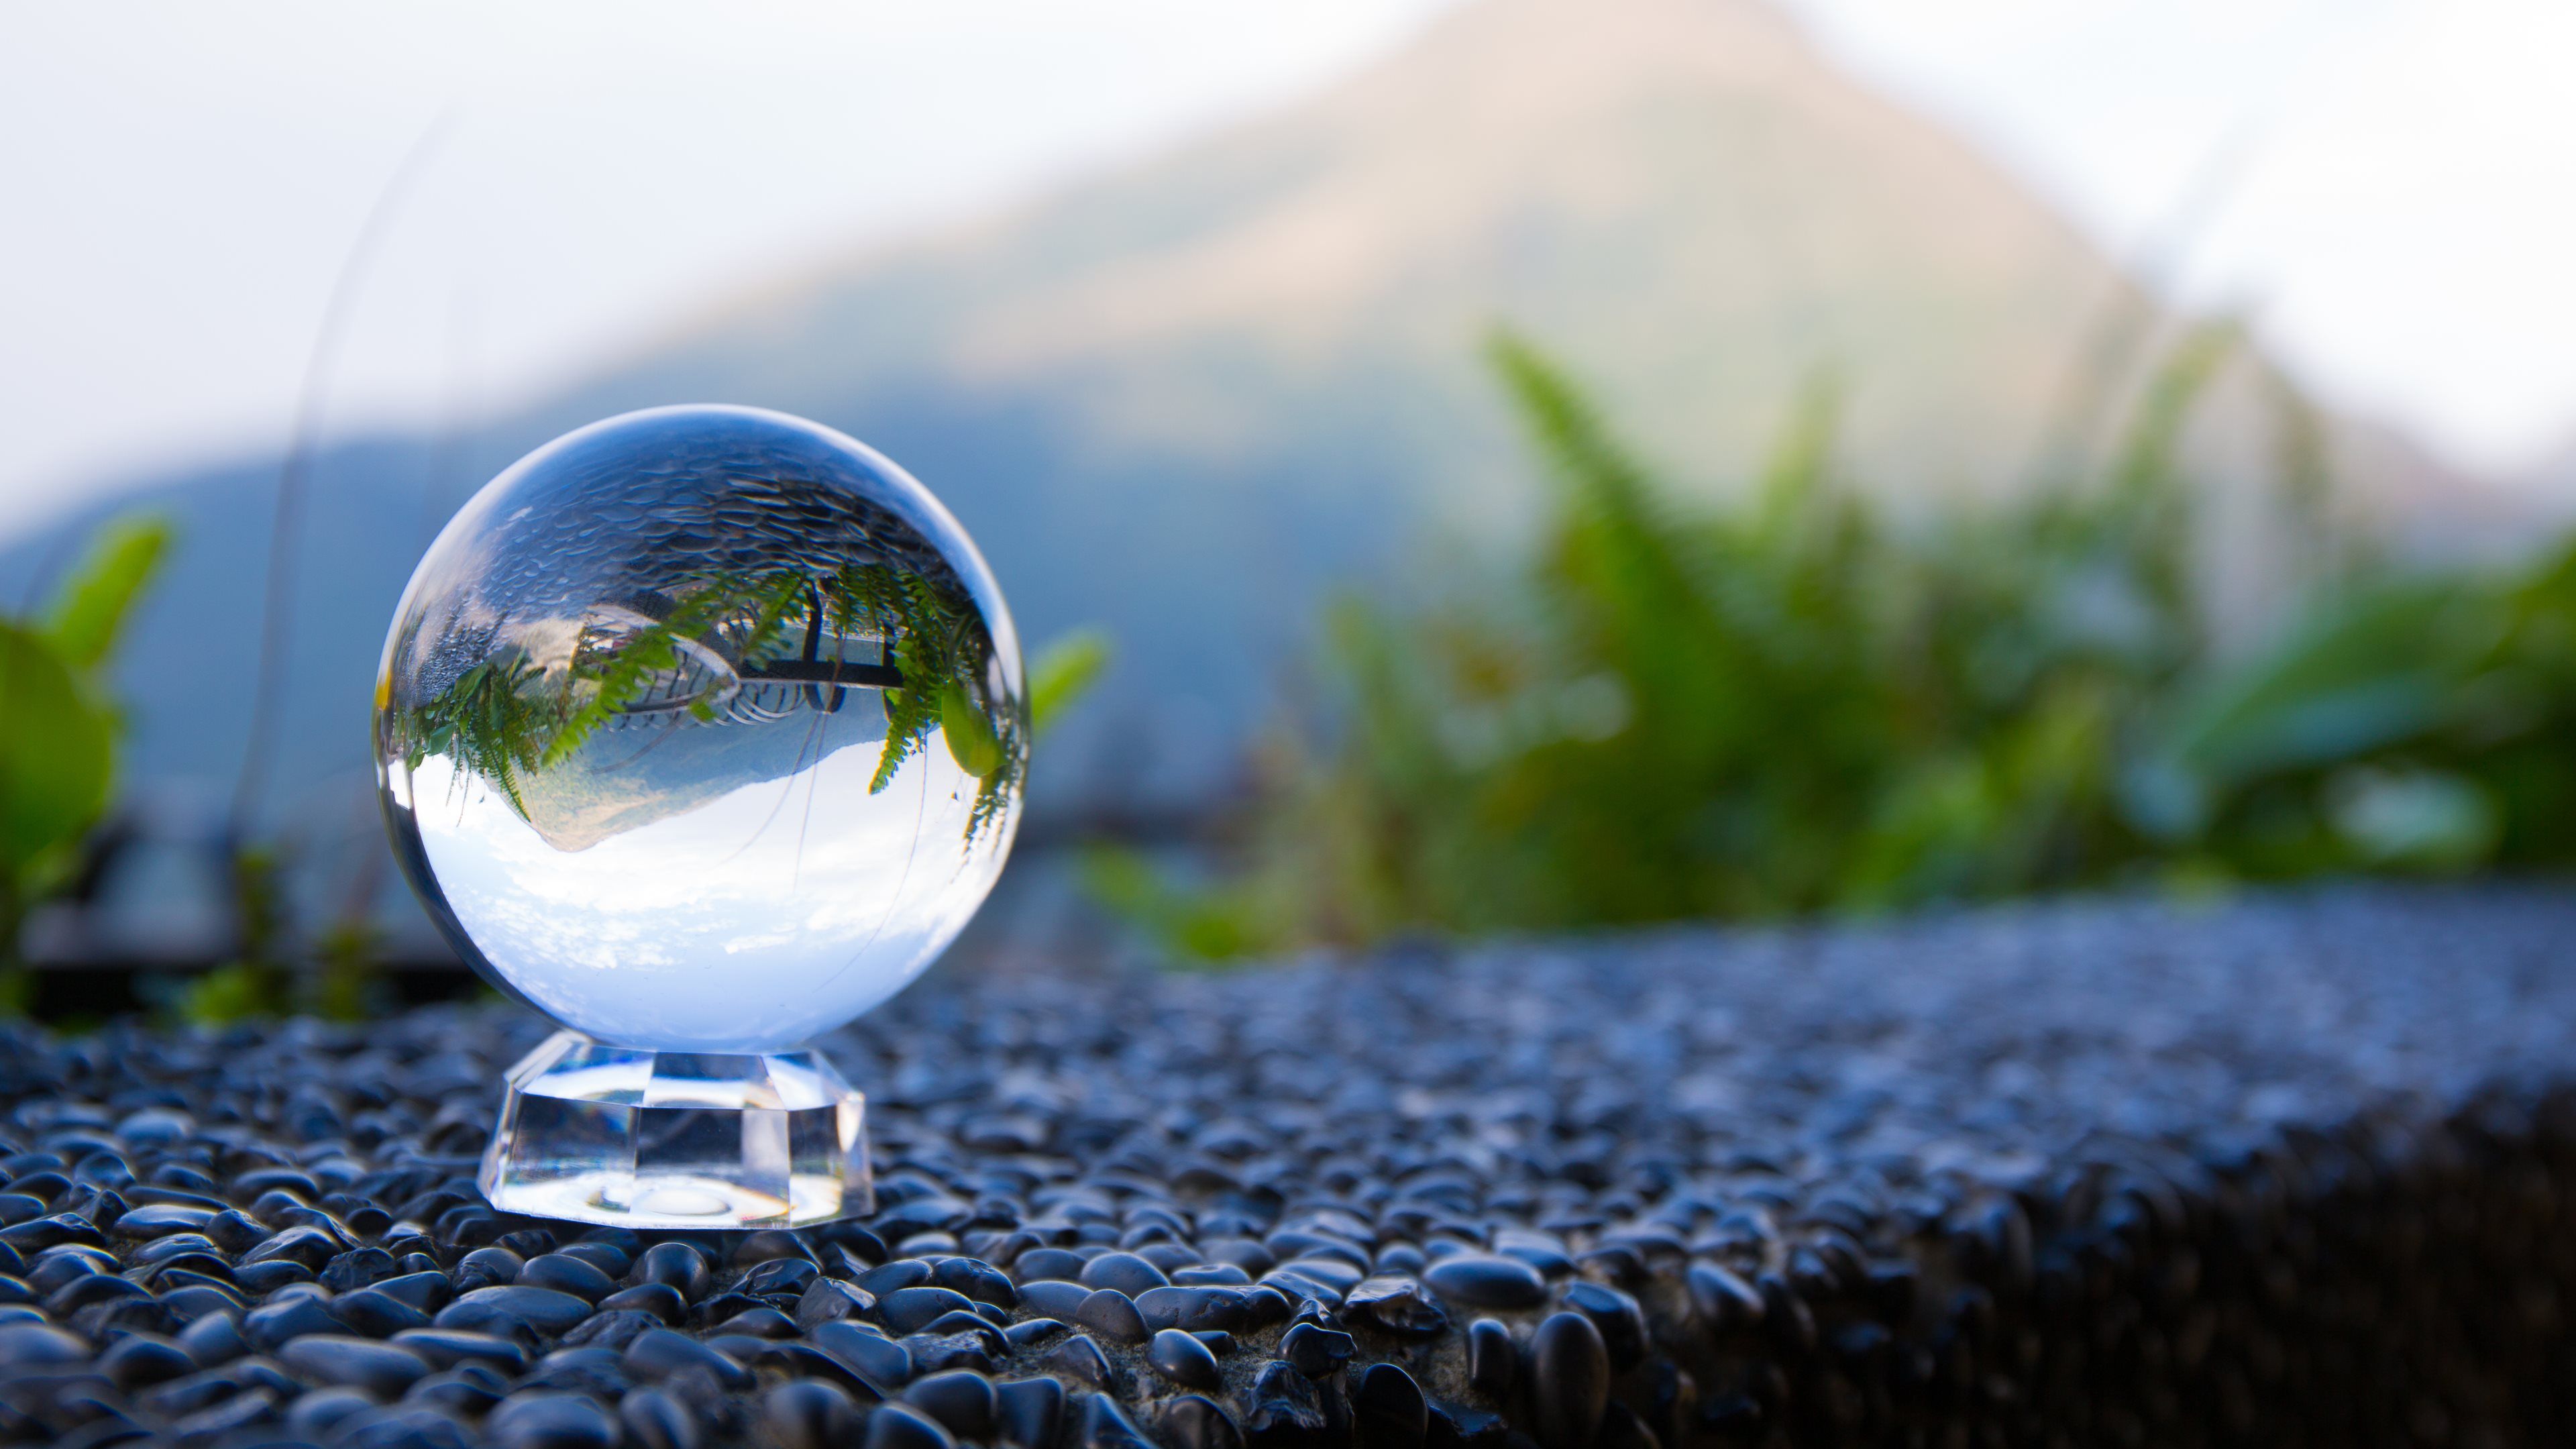  تصویر گوی شیشه ای شفاف روی سنگ ریزه در طبیعت با کیفیت hd